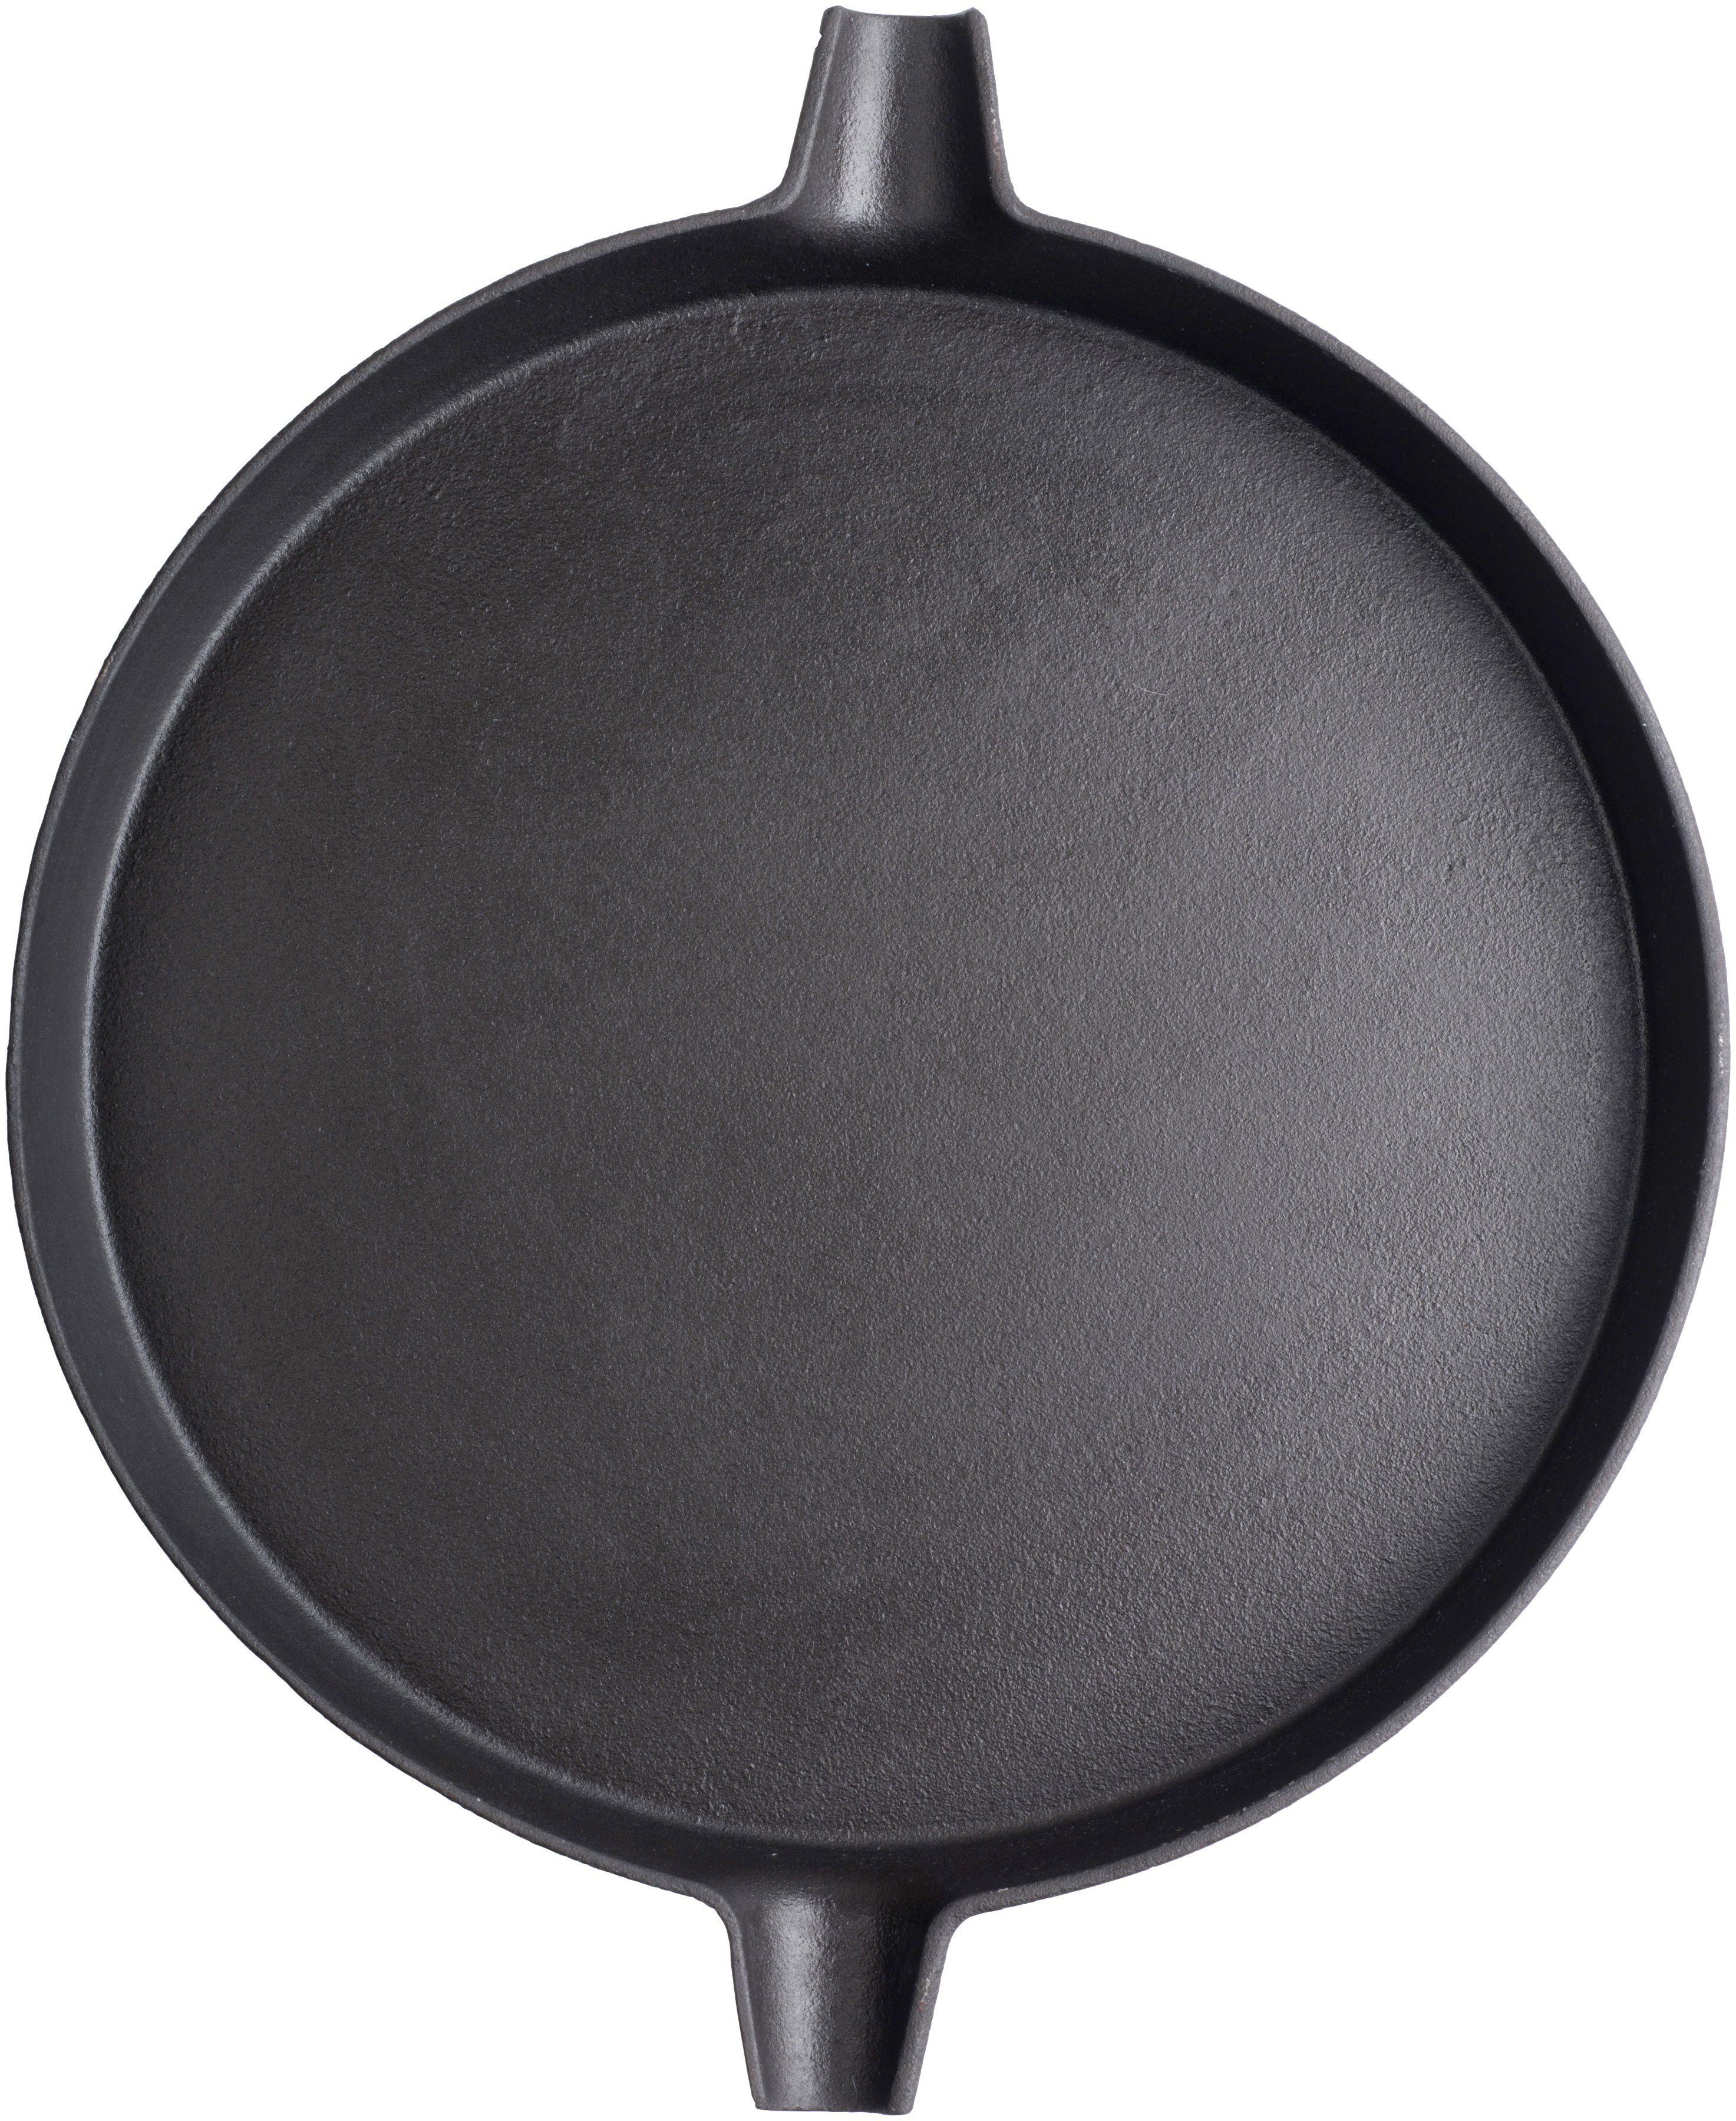 Grillpfanne, 31,7 cm Durchmesser Gusseisen, Tepro